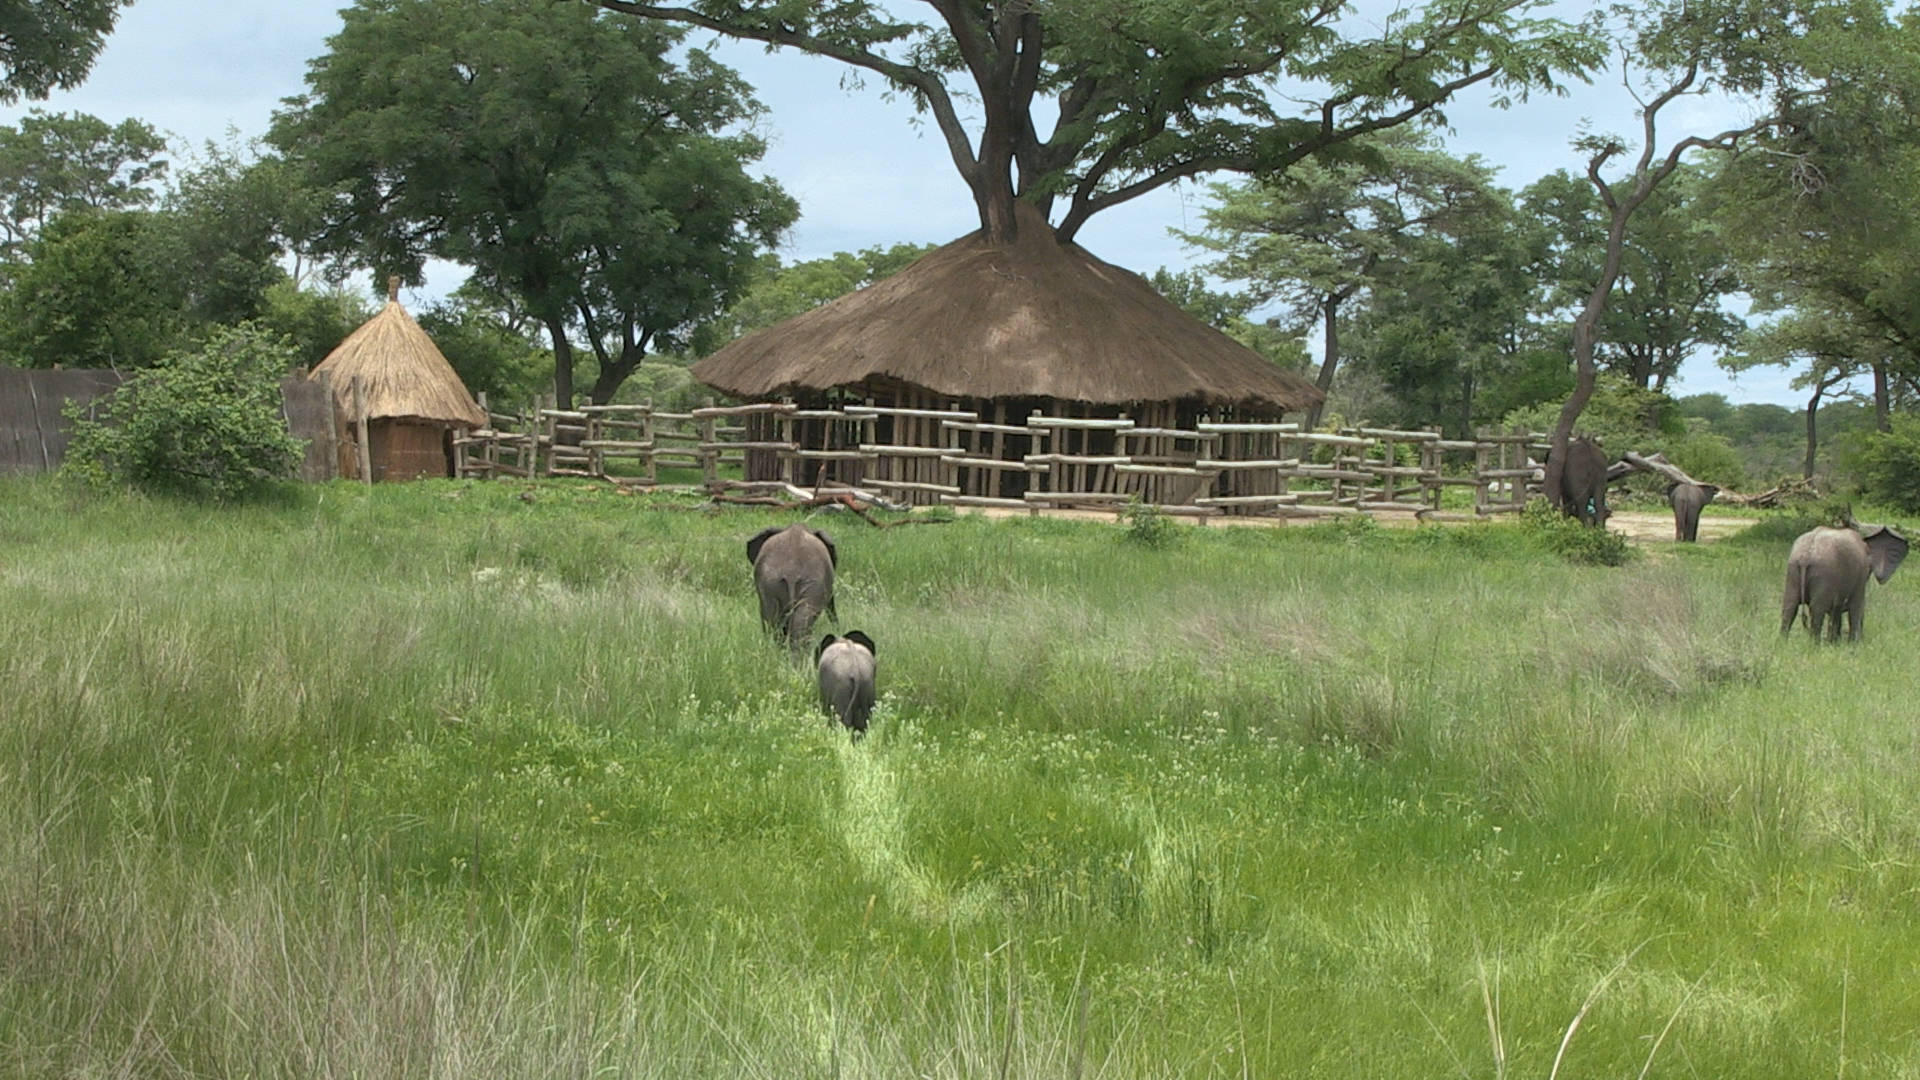 Elephants returning to the boma. Photo courtesy of Kelly Bakos.